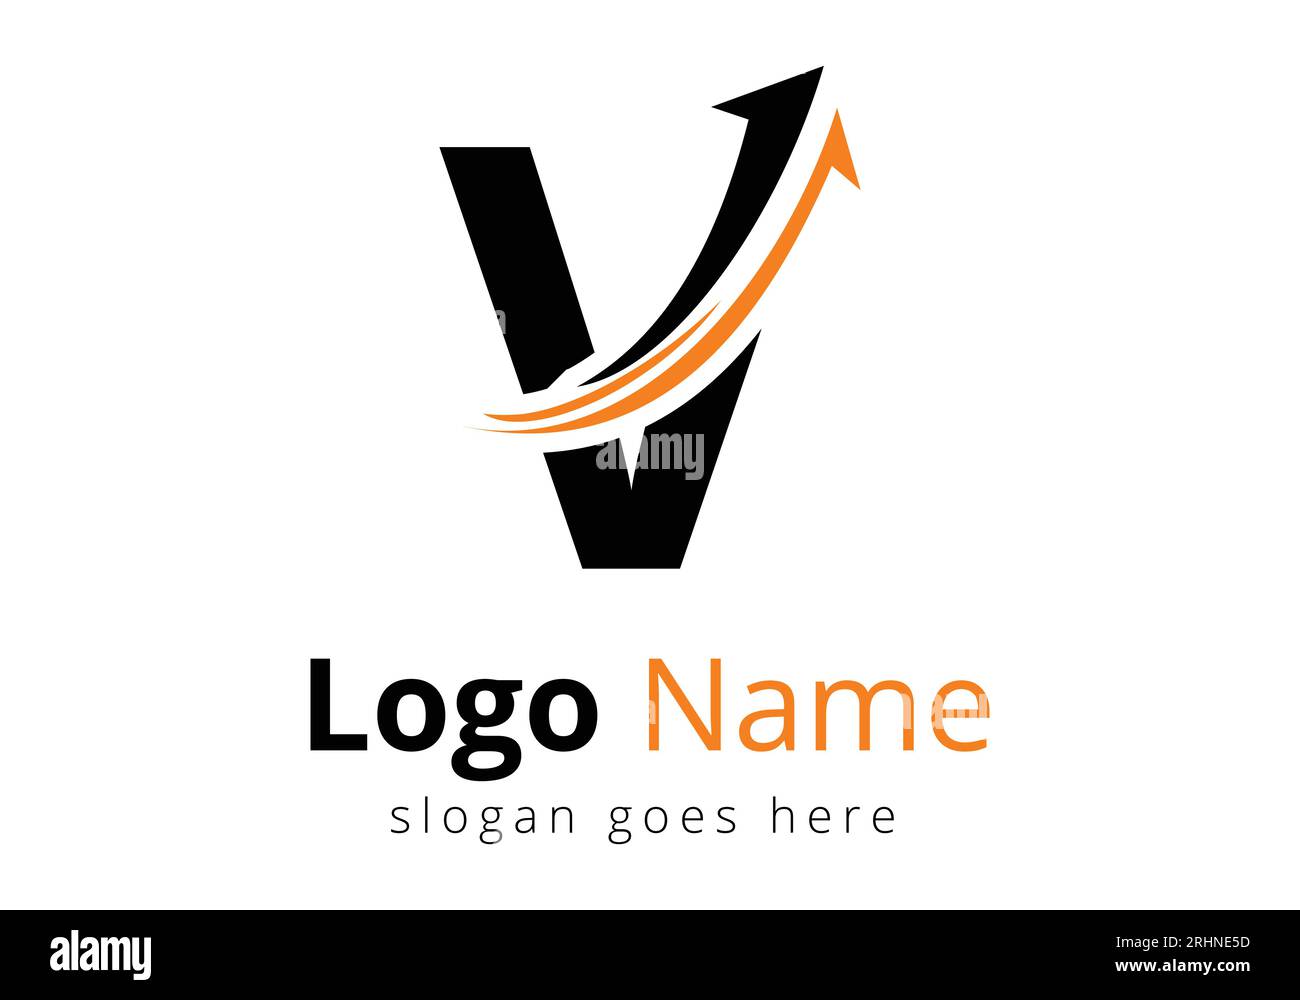 Logo Finance avec concept lettre V. Concept de logo financier ou de réussite. Logo pour l'entreprise comptable et l'identité de l'entreprise Illustration de Vecteur